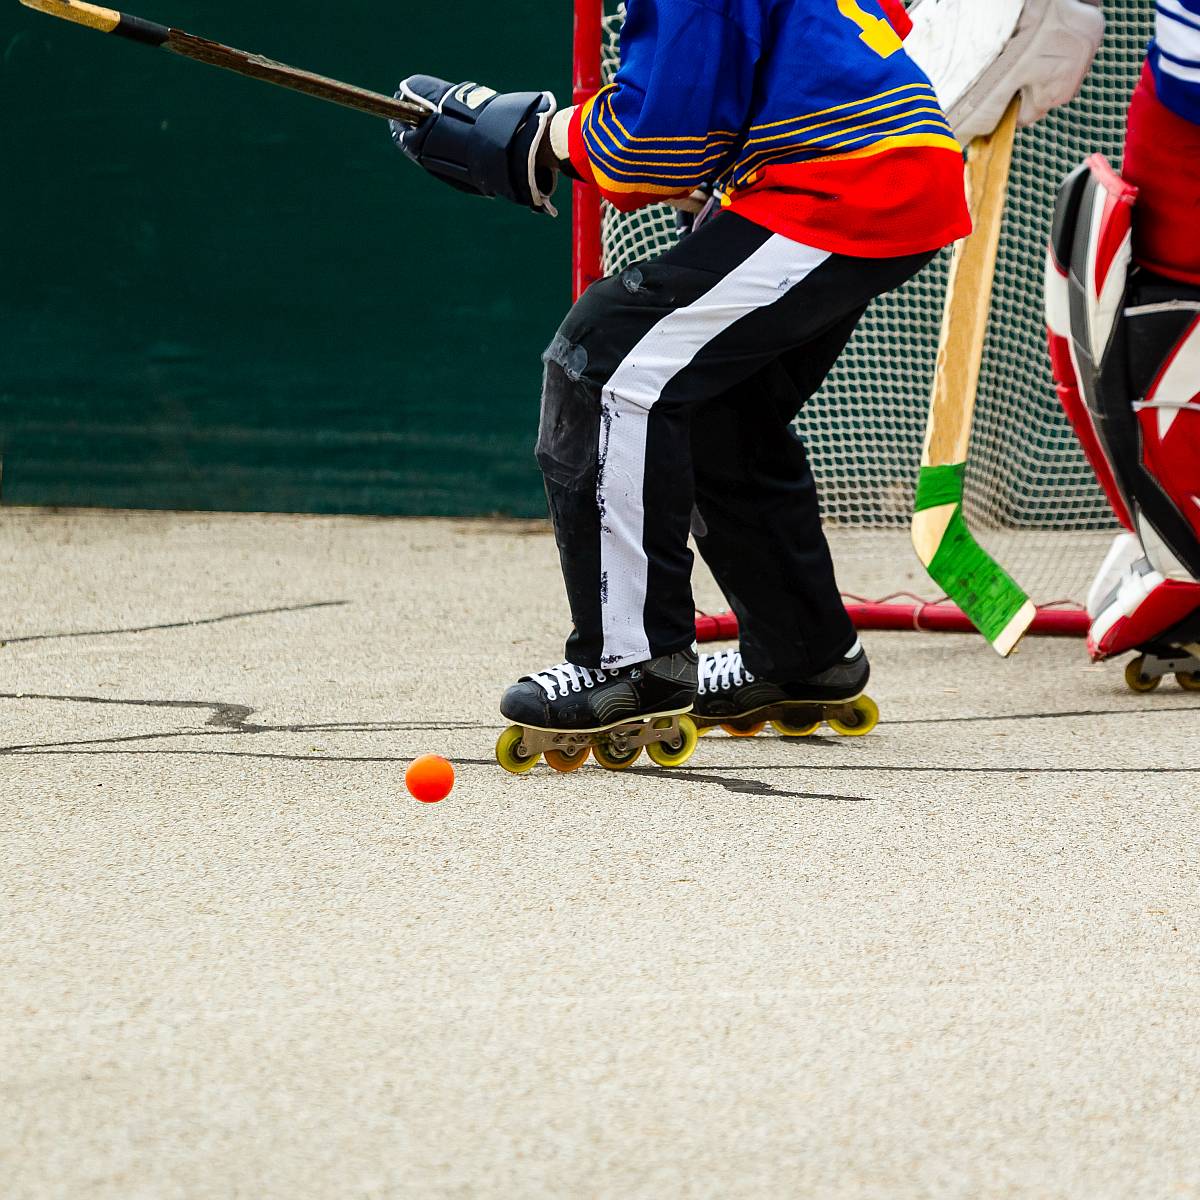 Zwei Personen spielen vor einem Tor Inline-Hockey in Schutzkleidung